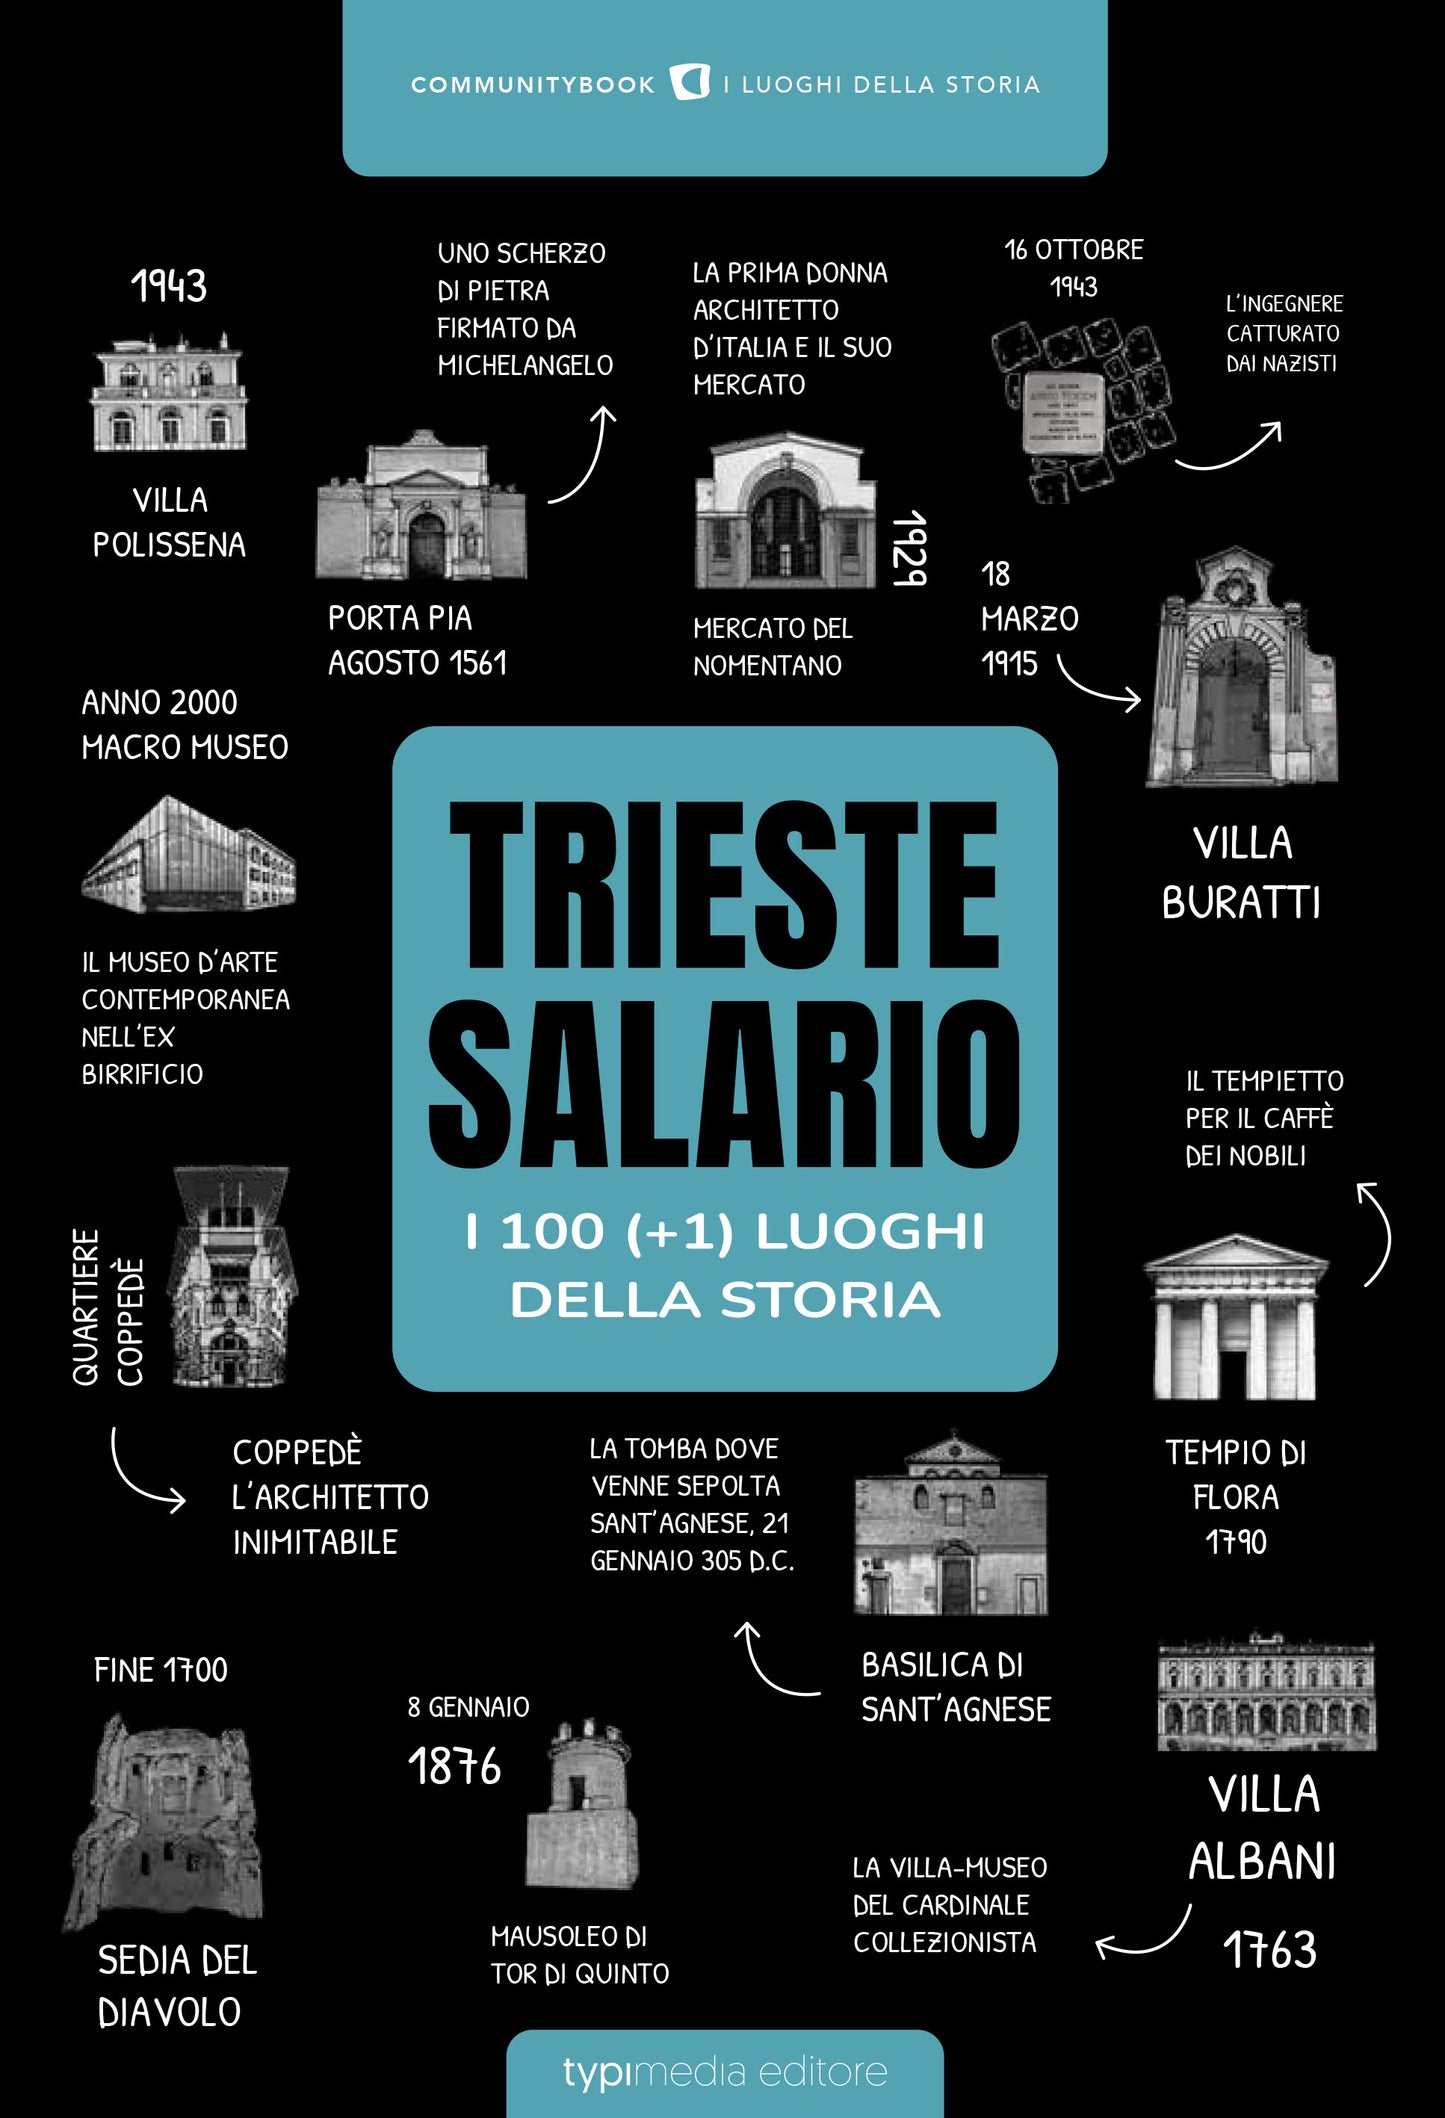 TRIESTE-SALARIO, I 100 (+1) LUOGHI DELLA STORIA